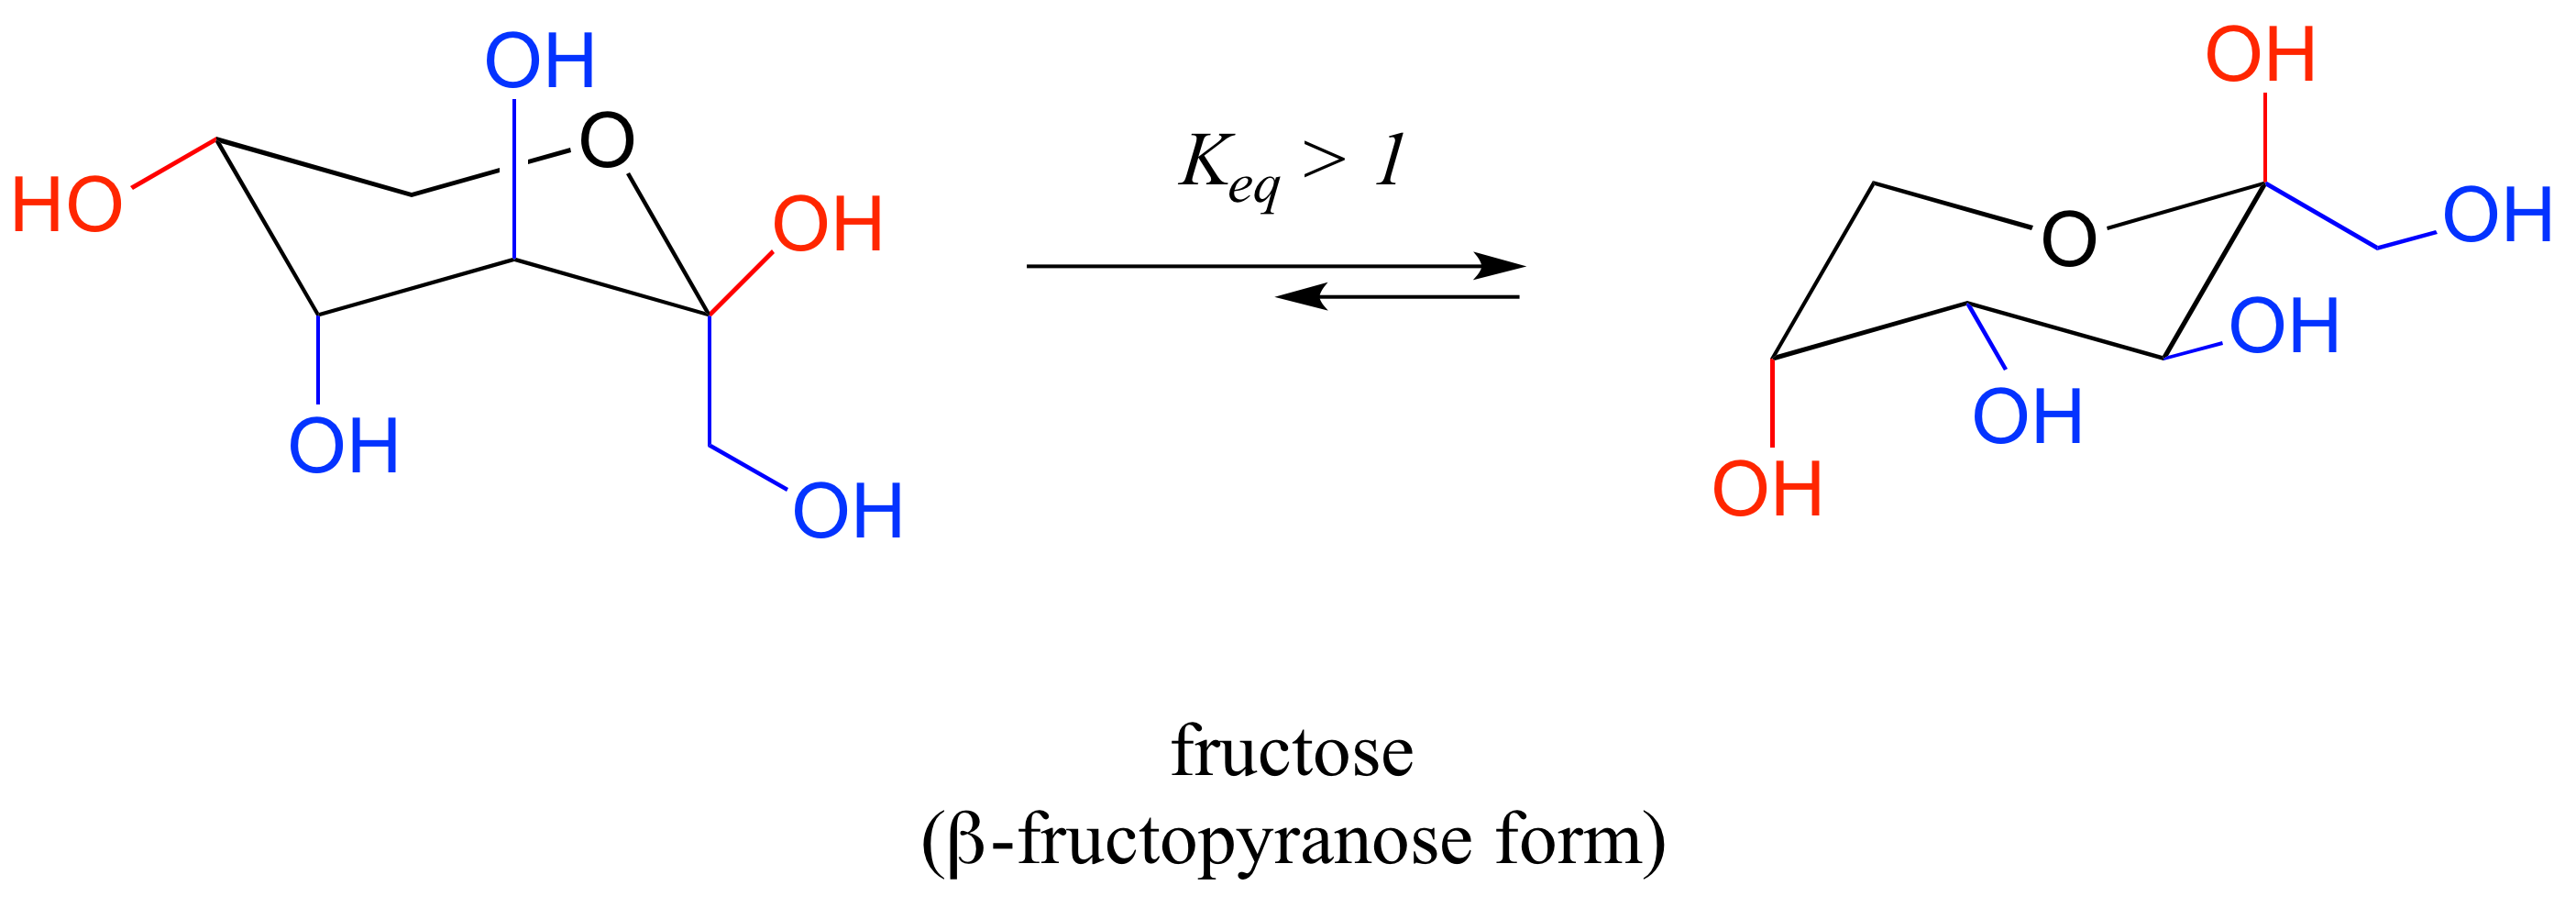 Molécula de fructosa en forma de anillo de seis miembros. A la izquierda, tres sustituyentes axiales y dos sustituyentes ecuatoriales. A la derecha, dos sustituyentes axiales y tres sustituyentes ecuatoriales. Constante de equilibrio mayor a uno.